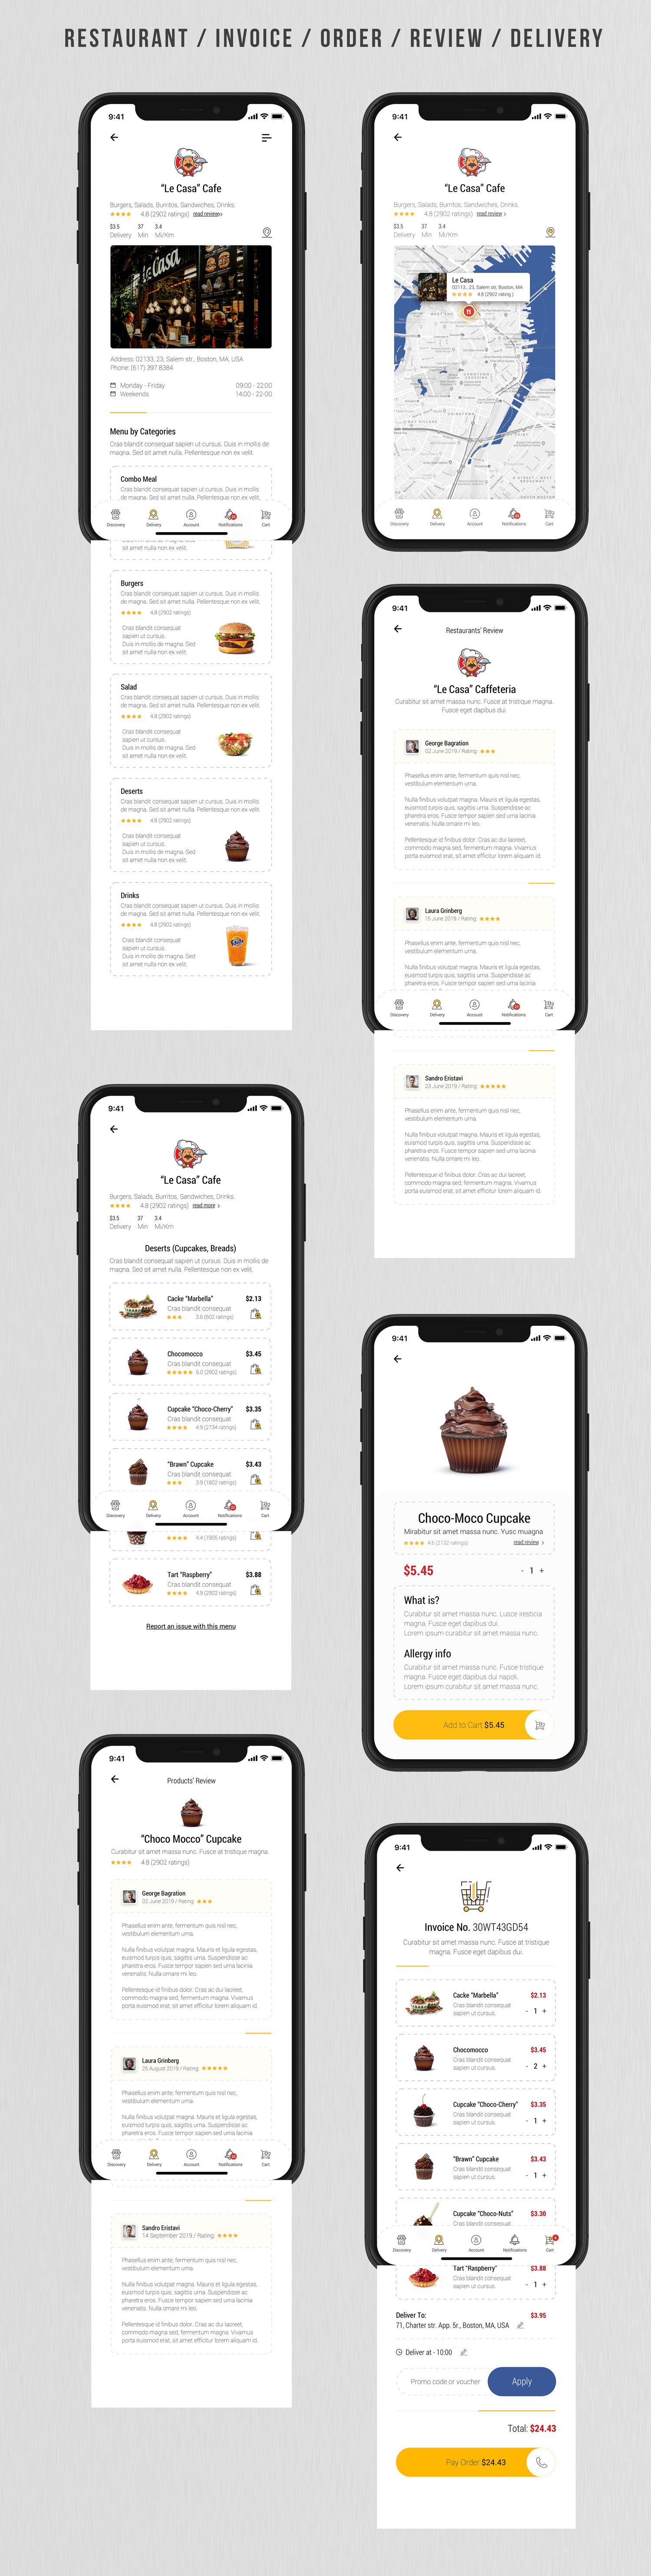 Dobule - Food Delivery UI Kit for Mobile App - 17